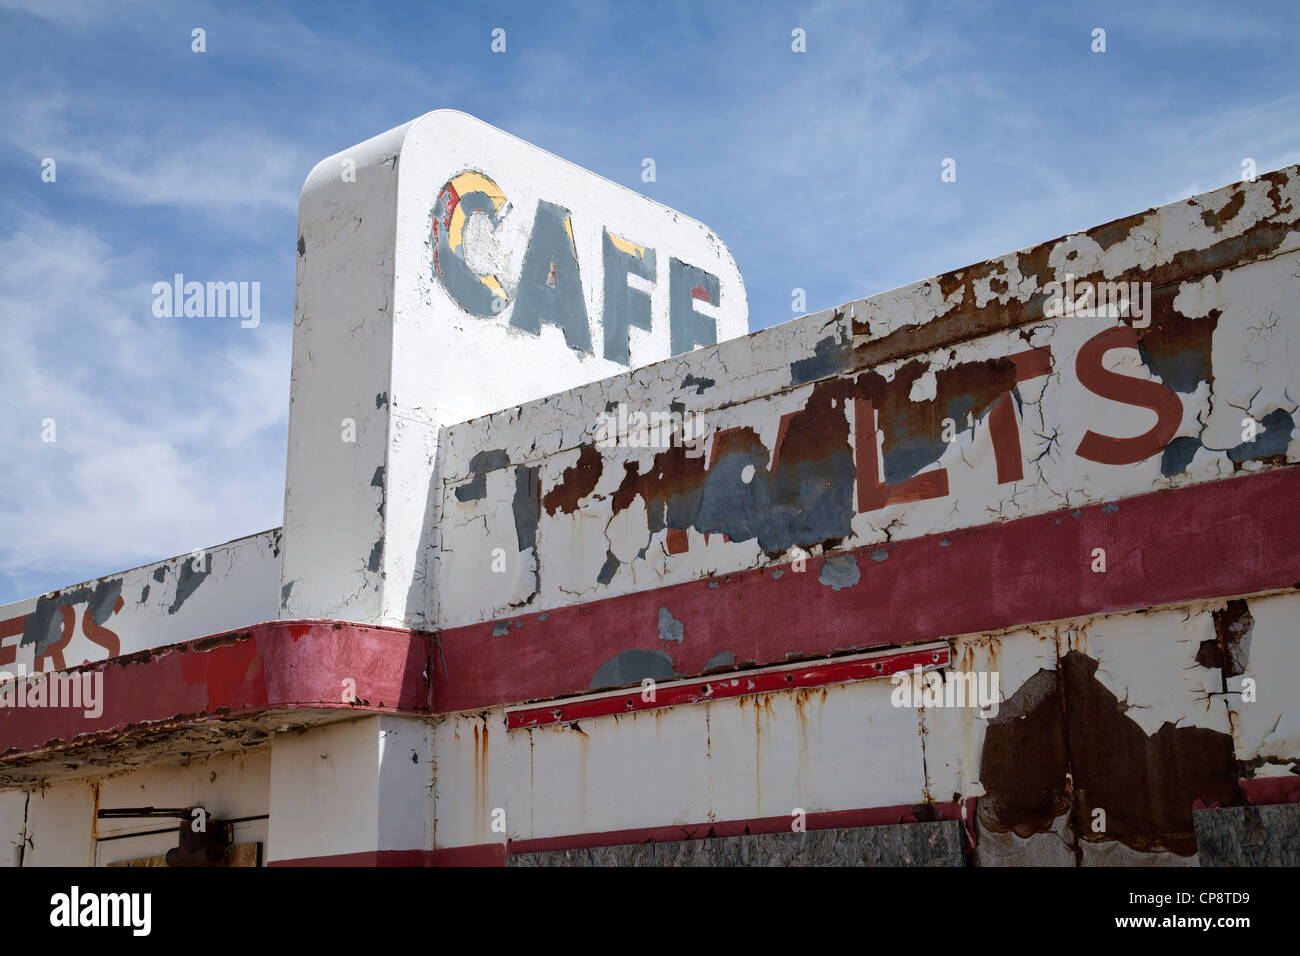 Cafe presso Twin frecce Trading Post sul percorso 66 in Arizona. Foto Stock